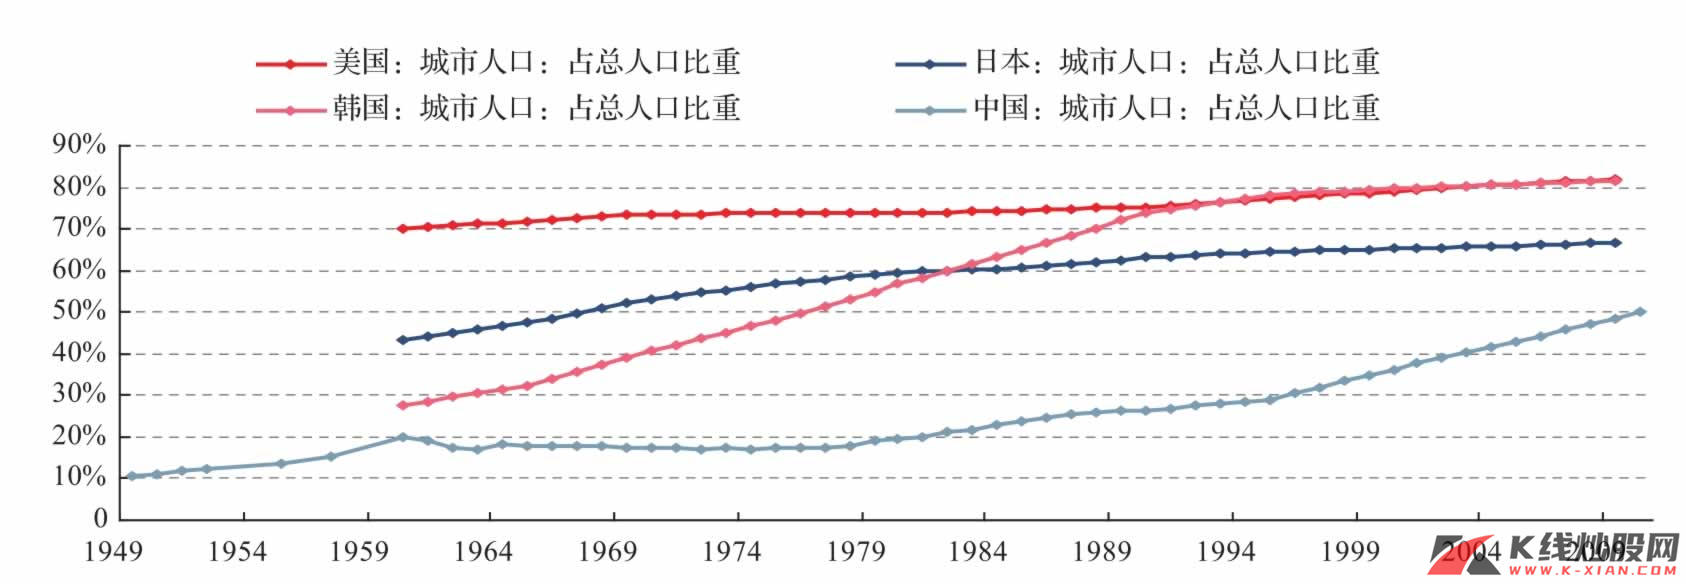 中国房地产周期与经济周期